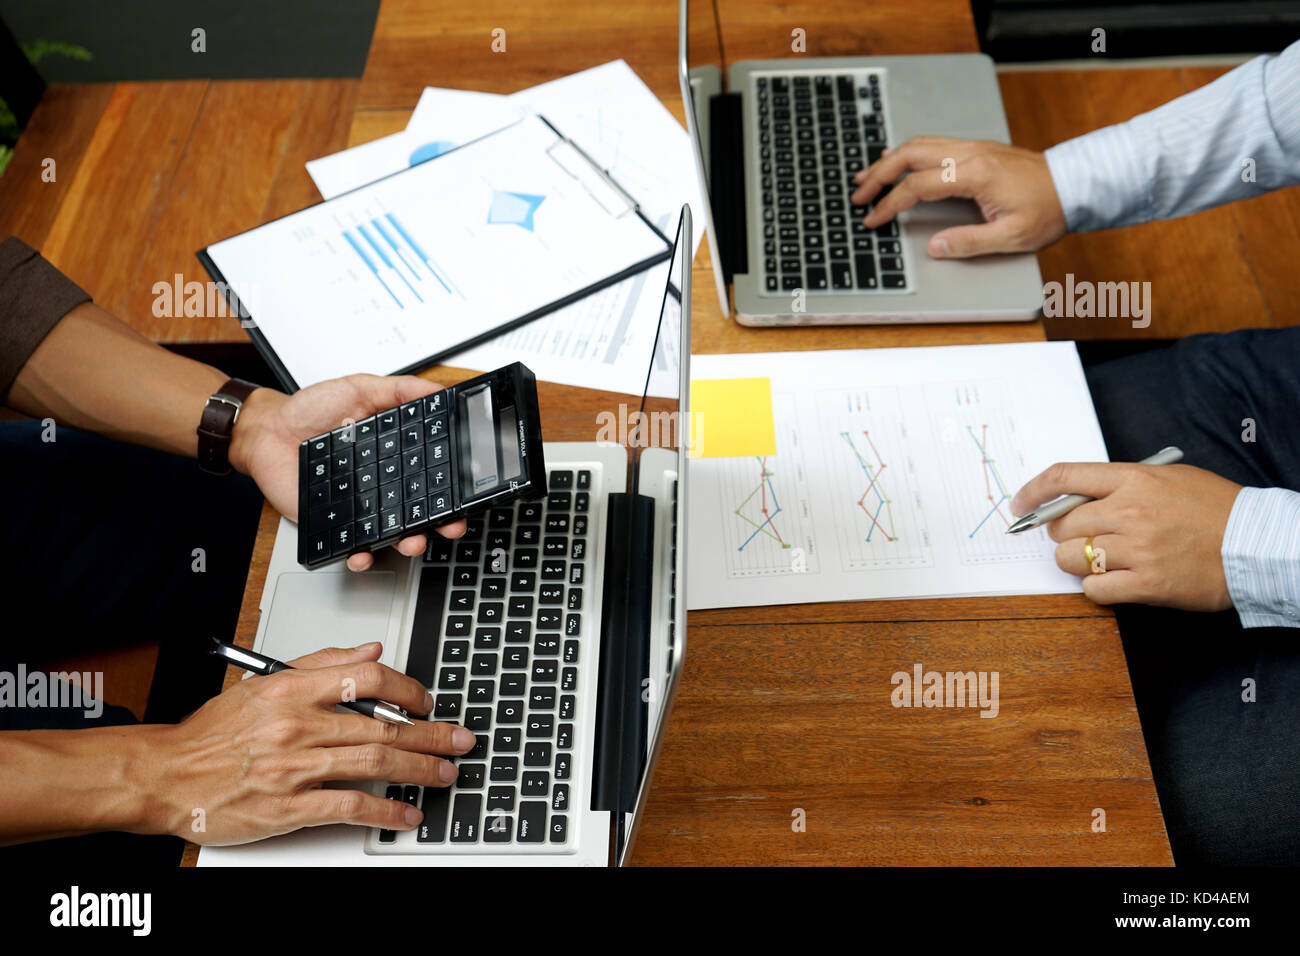 Deux man utilisent l'ordinateur et de l'analyse graphique papier sur bois table plus copy space Banque D'Images